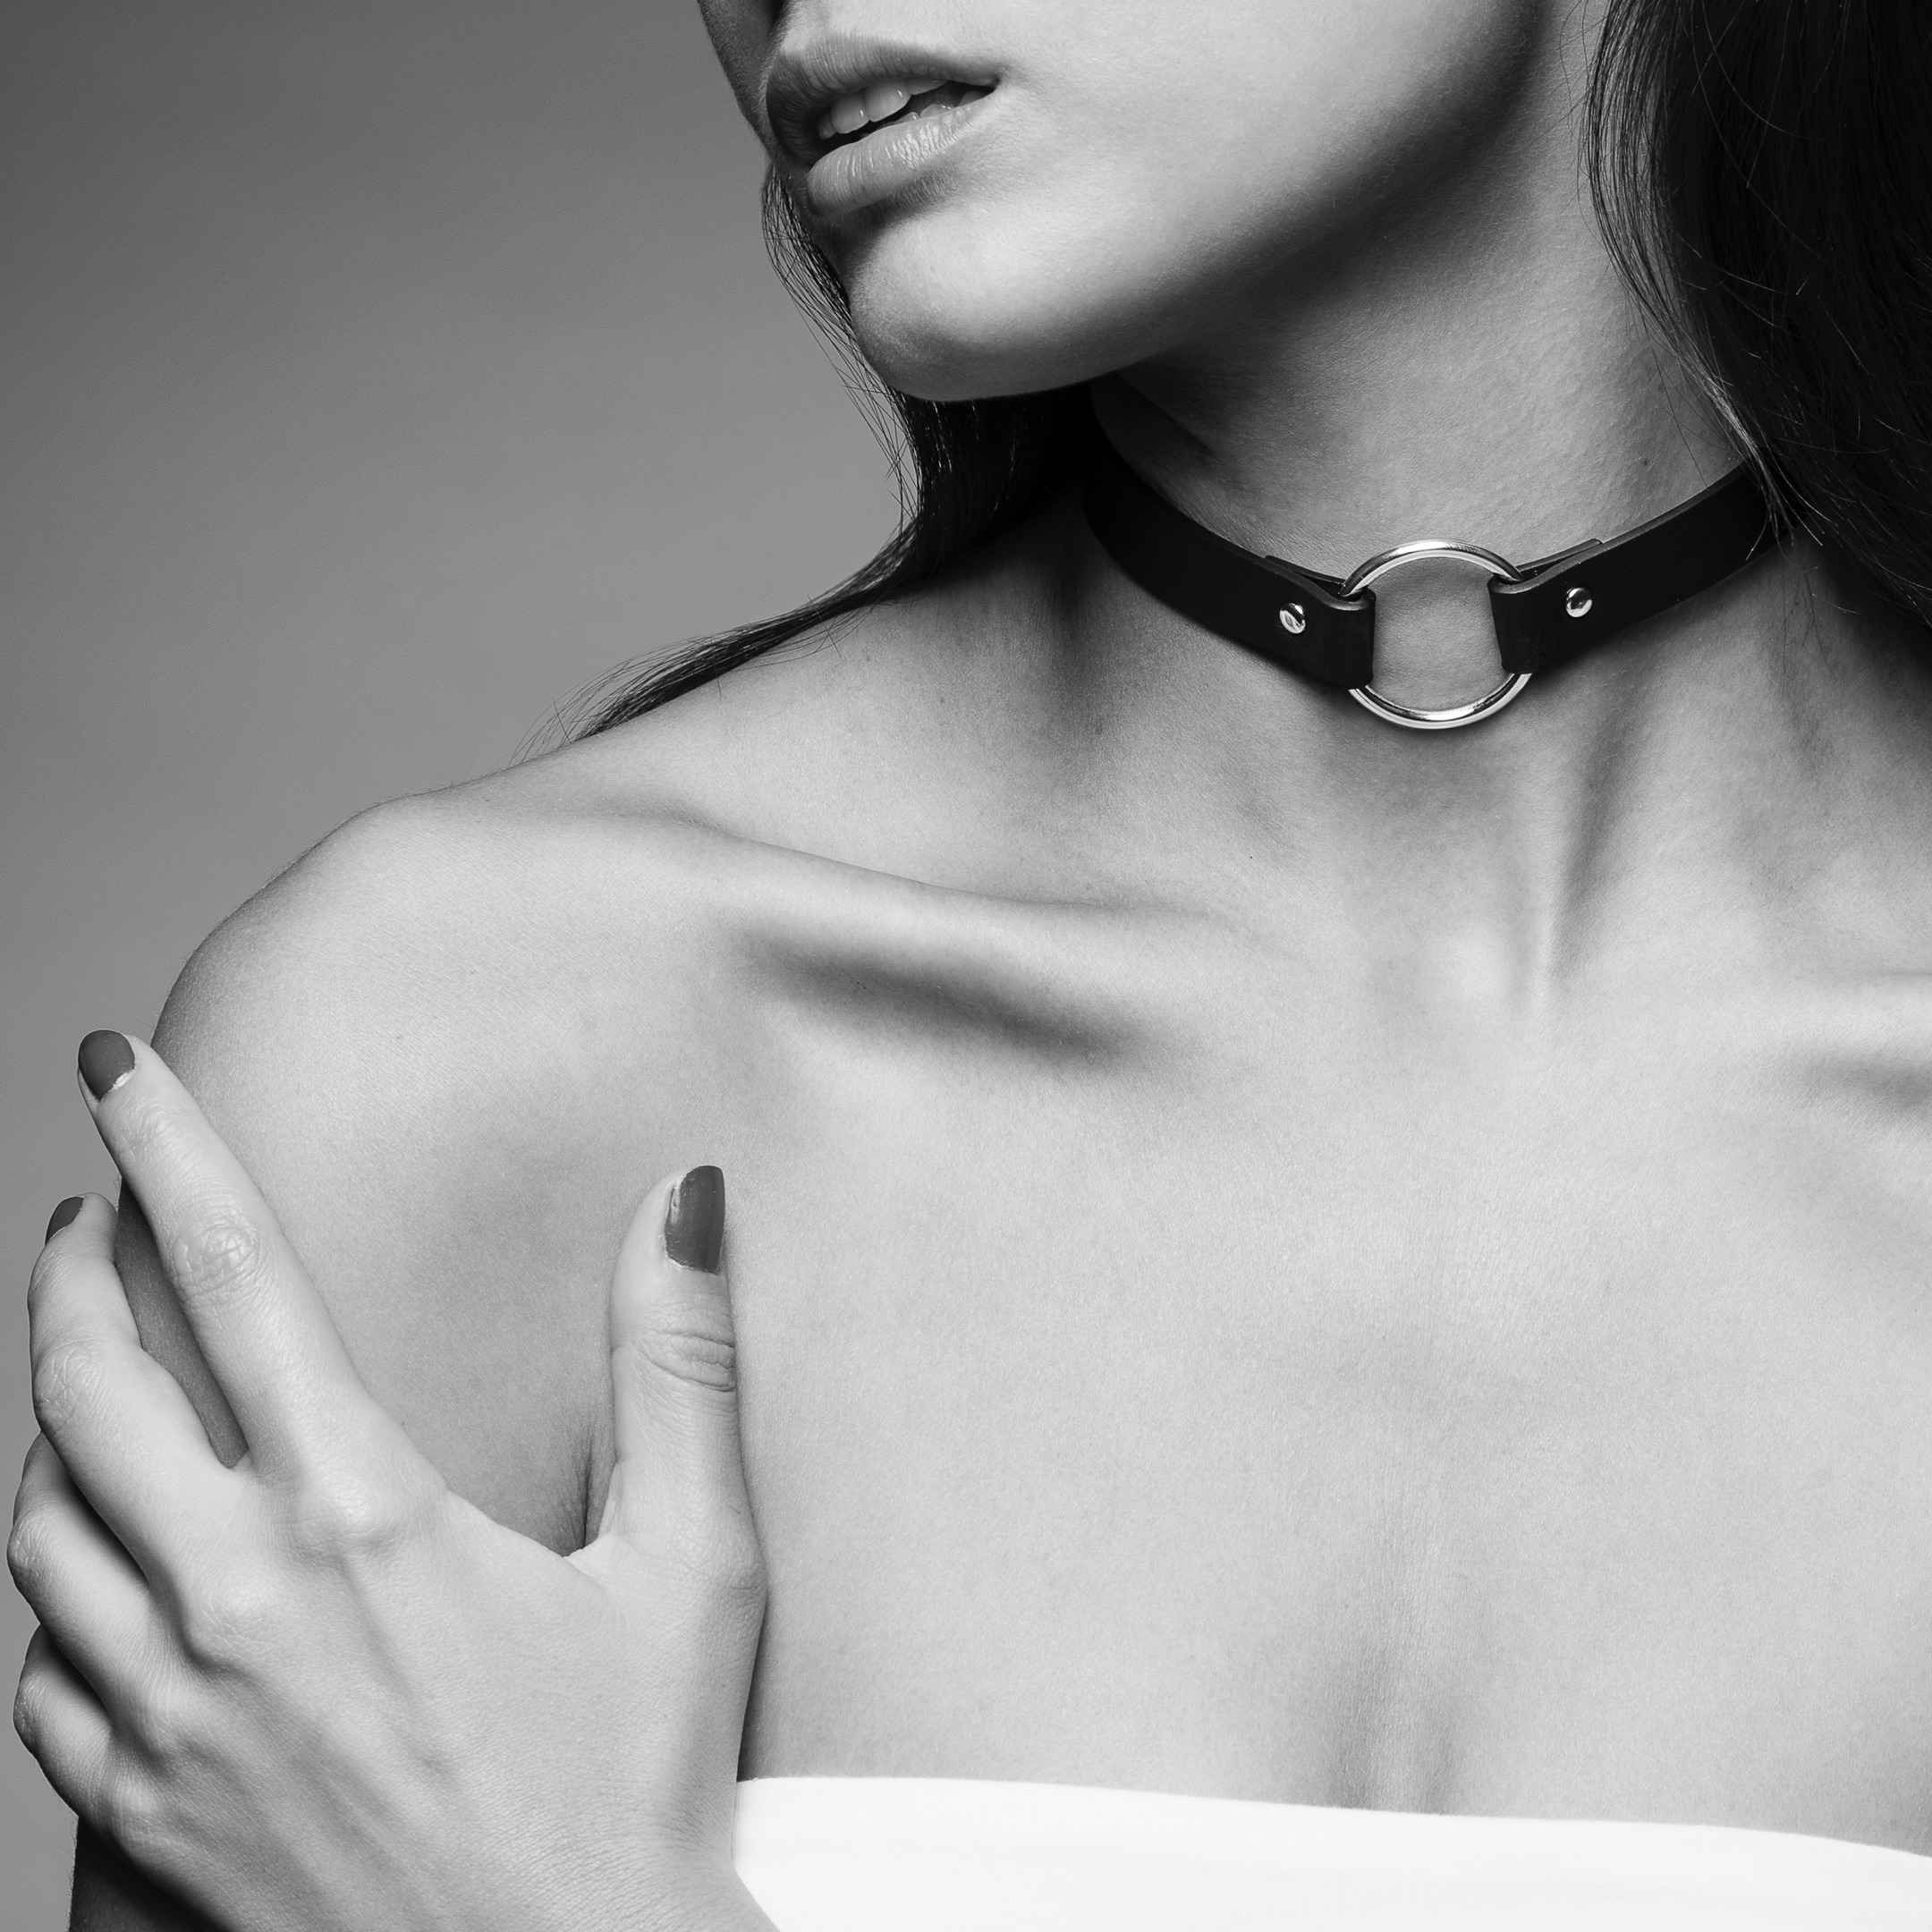 Sexy šperky patří k sexuálním hrátkám – umí toho více, než by se mohlo na první pohled zdát